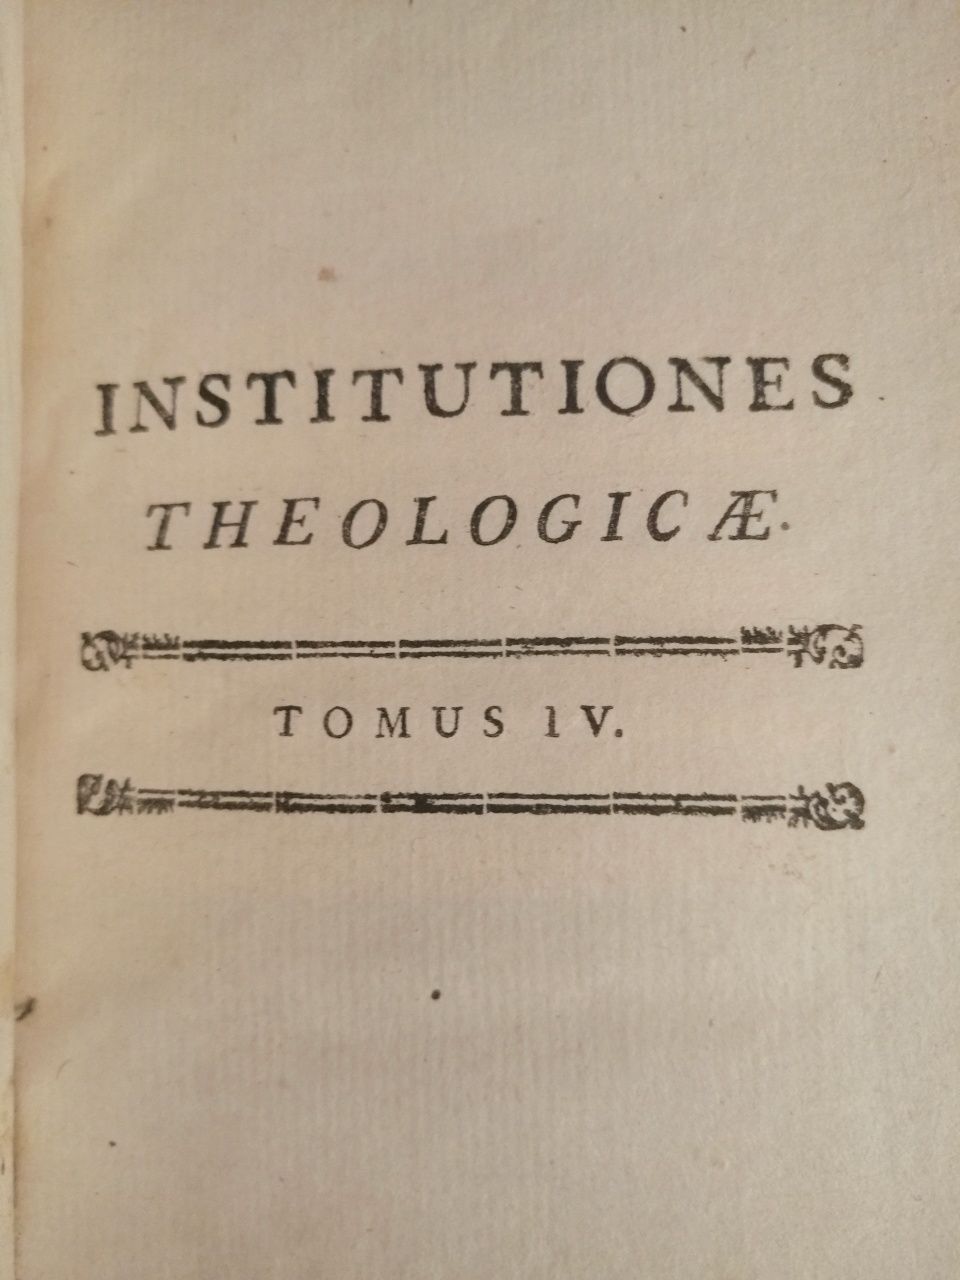 Livro antigo Institutiones Theologicae